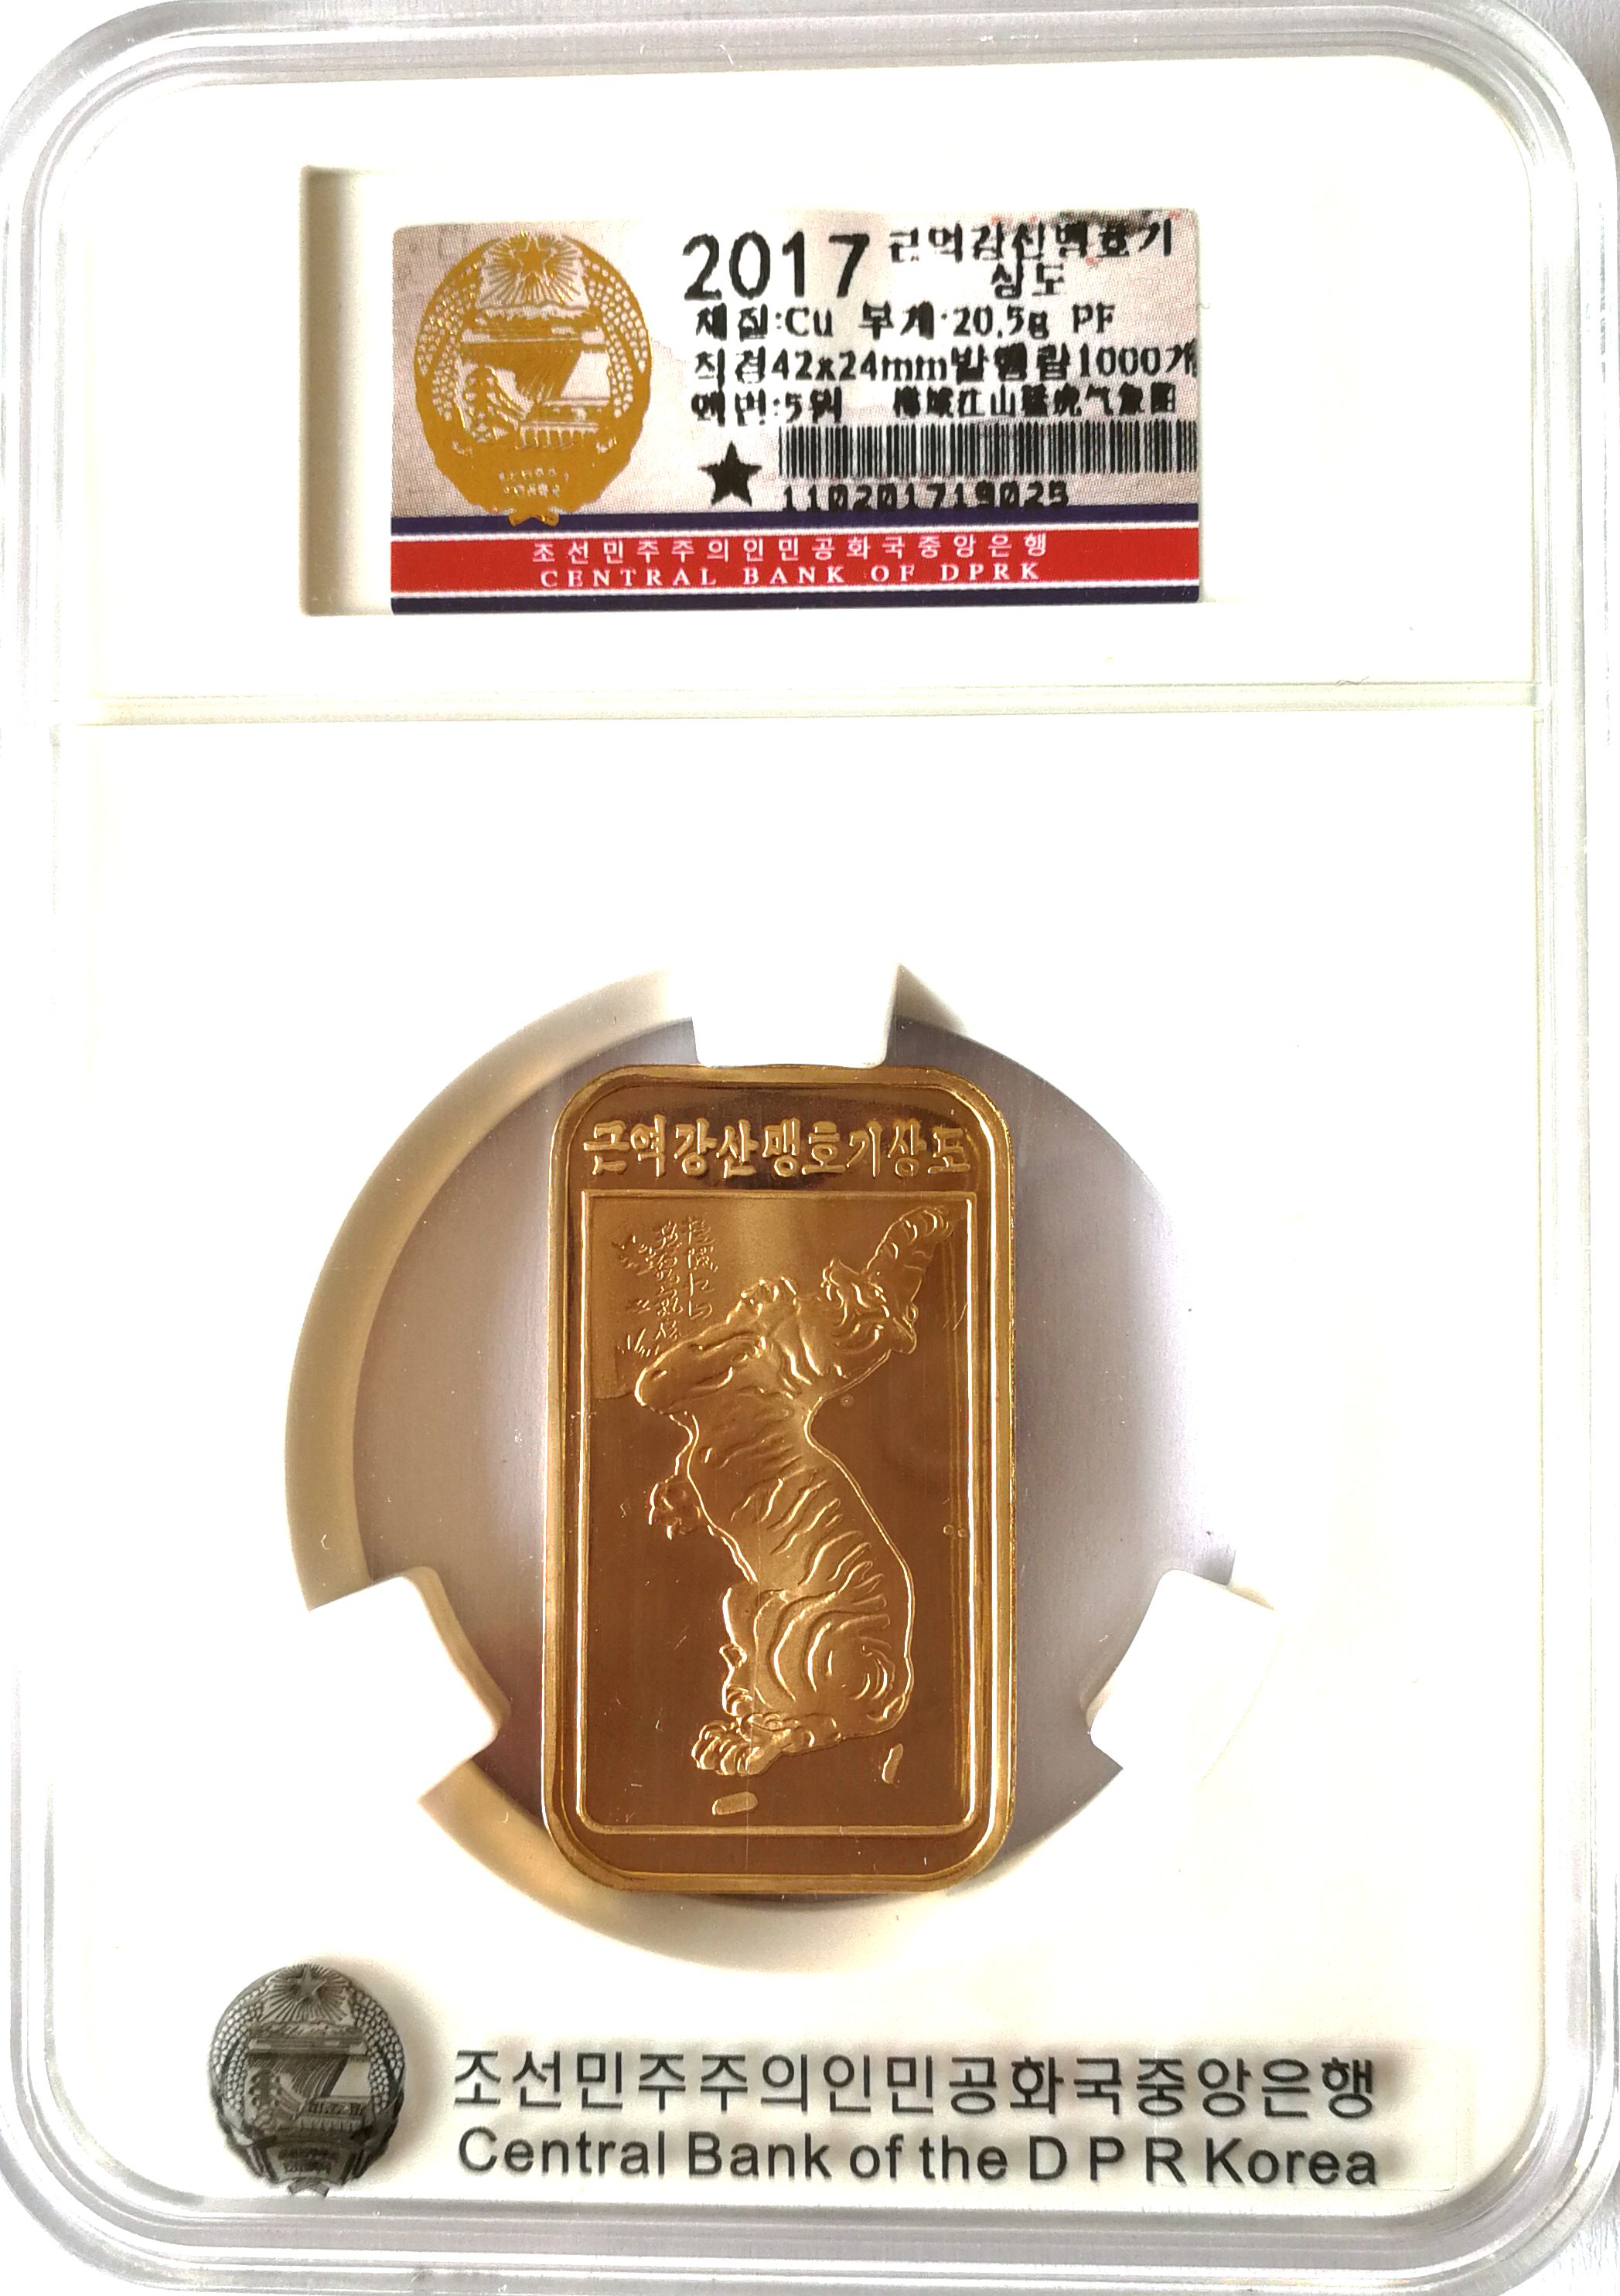 L3366, Korea Rectangle Coin, "Korean Tiger Map", 2017 Korean Grade Box